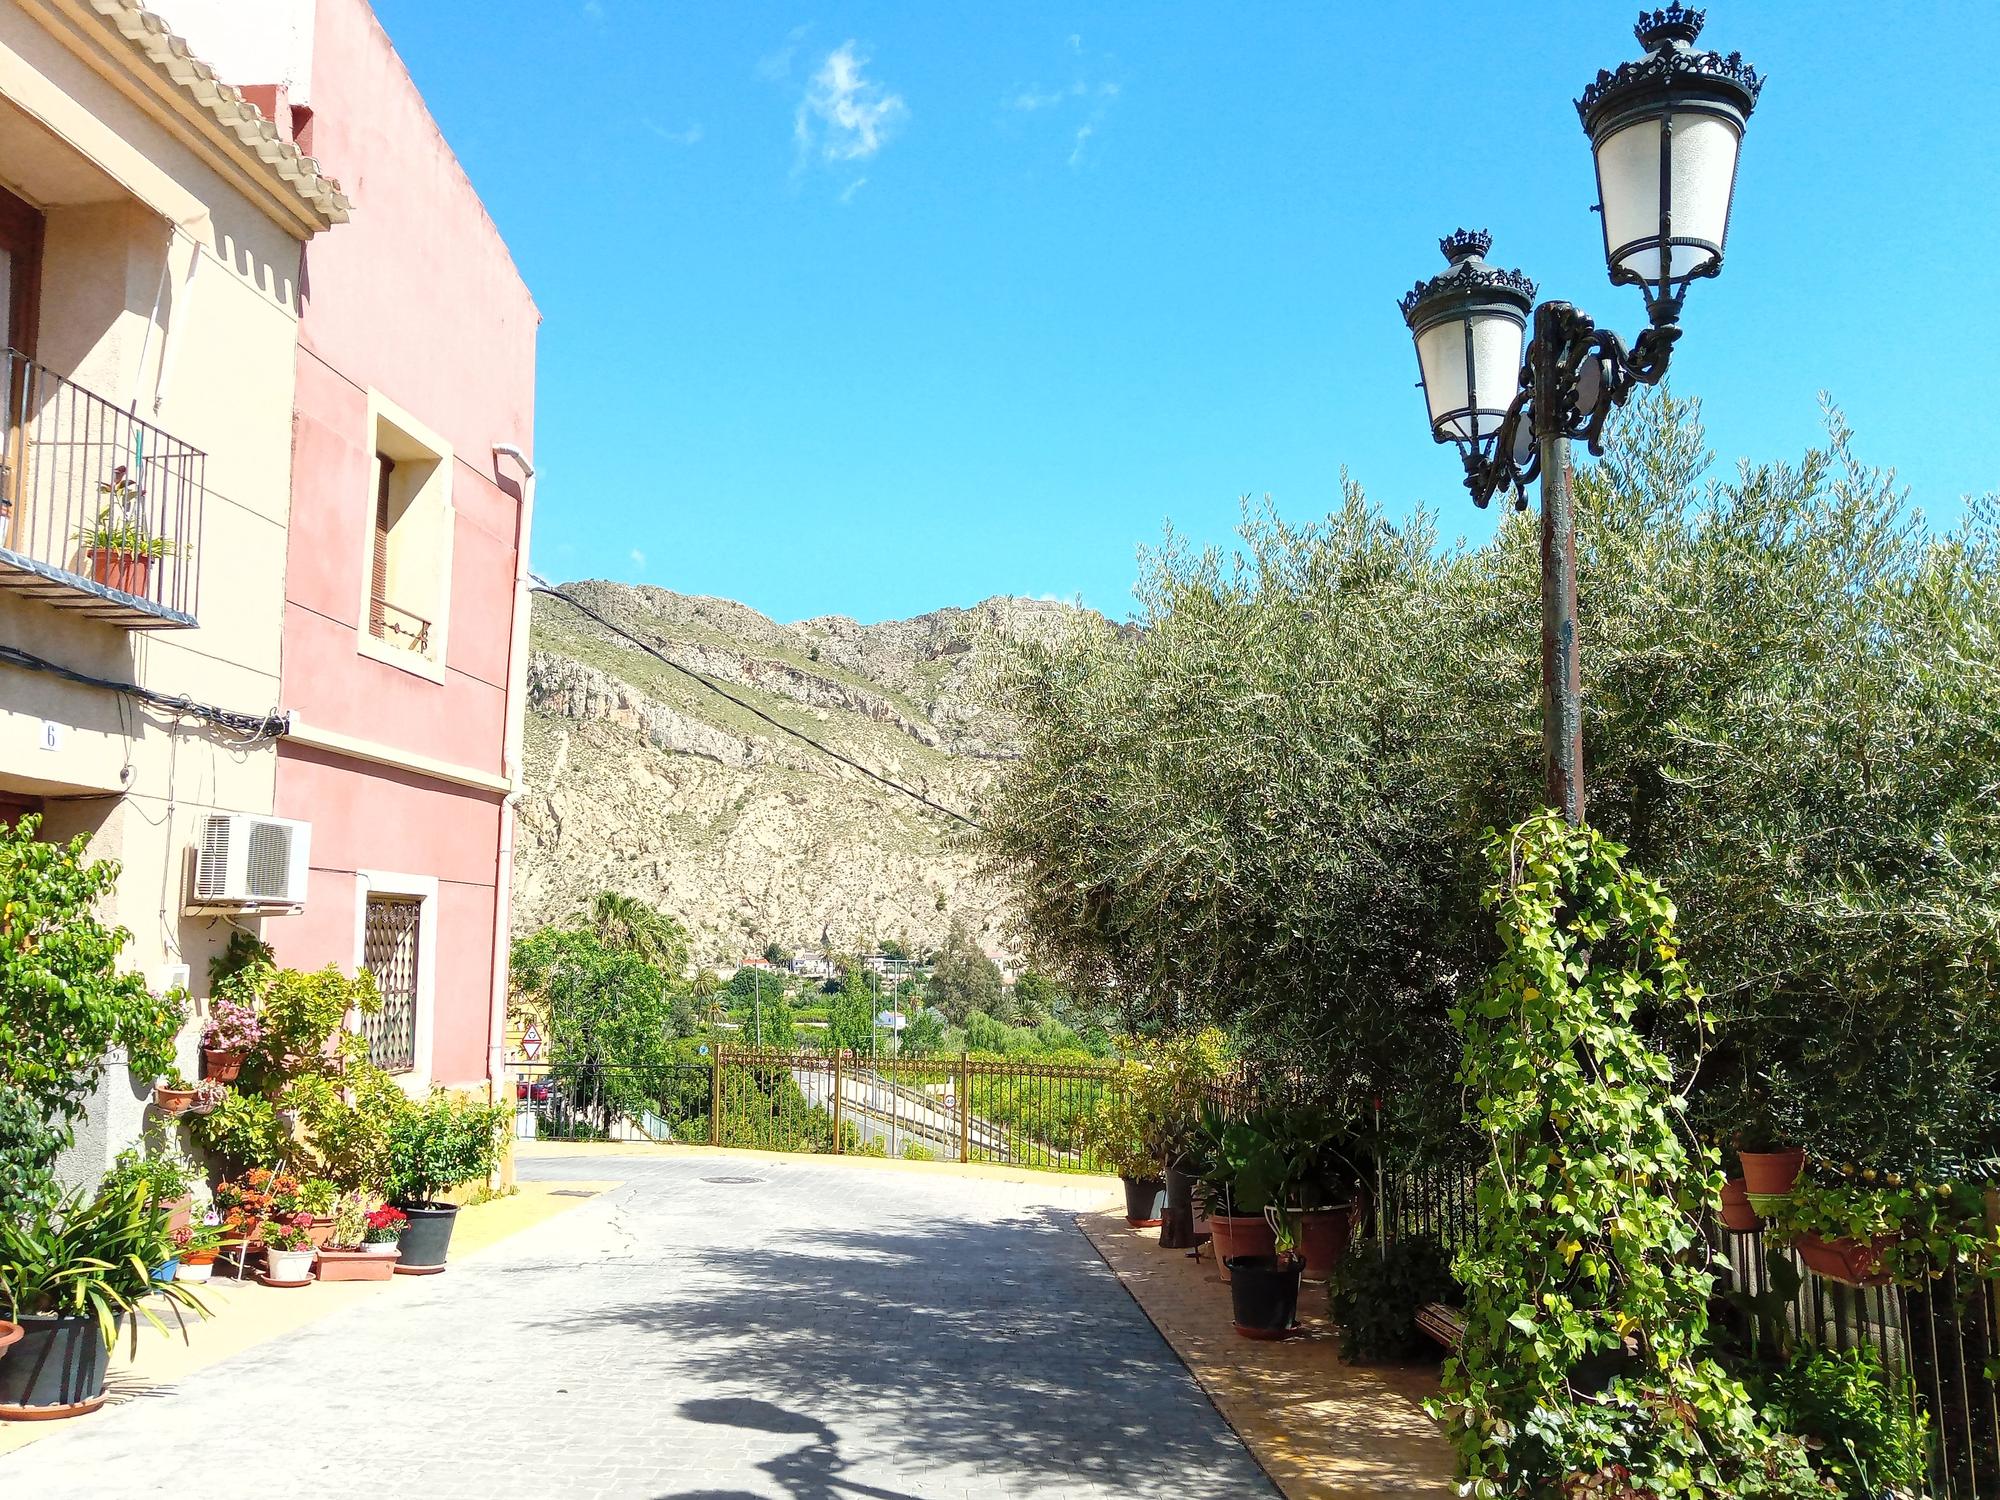 Villanueva tiene mil rincones para visitar uno de los valles más increíbles del Mediterráneo.